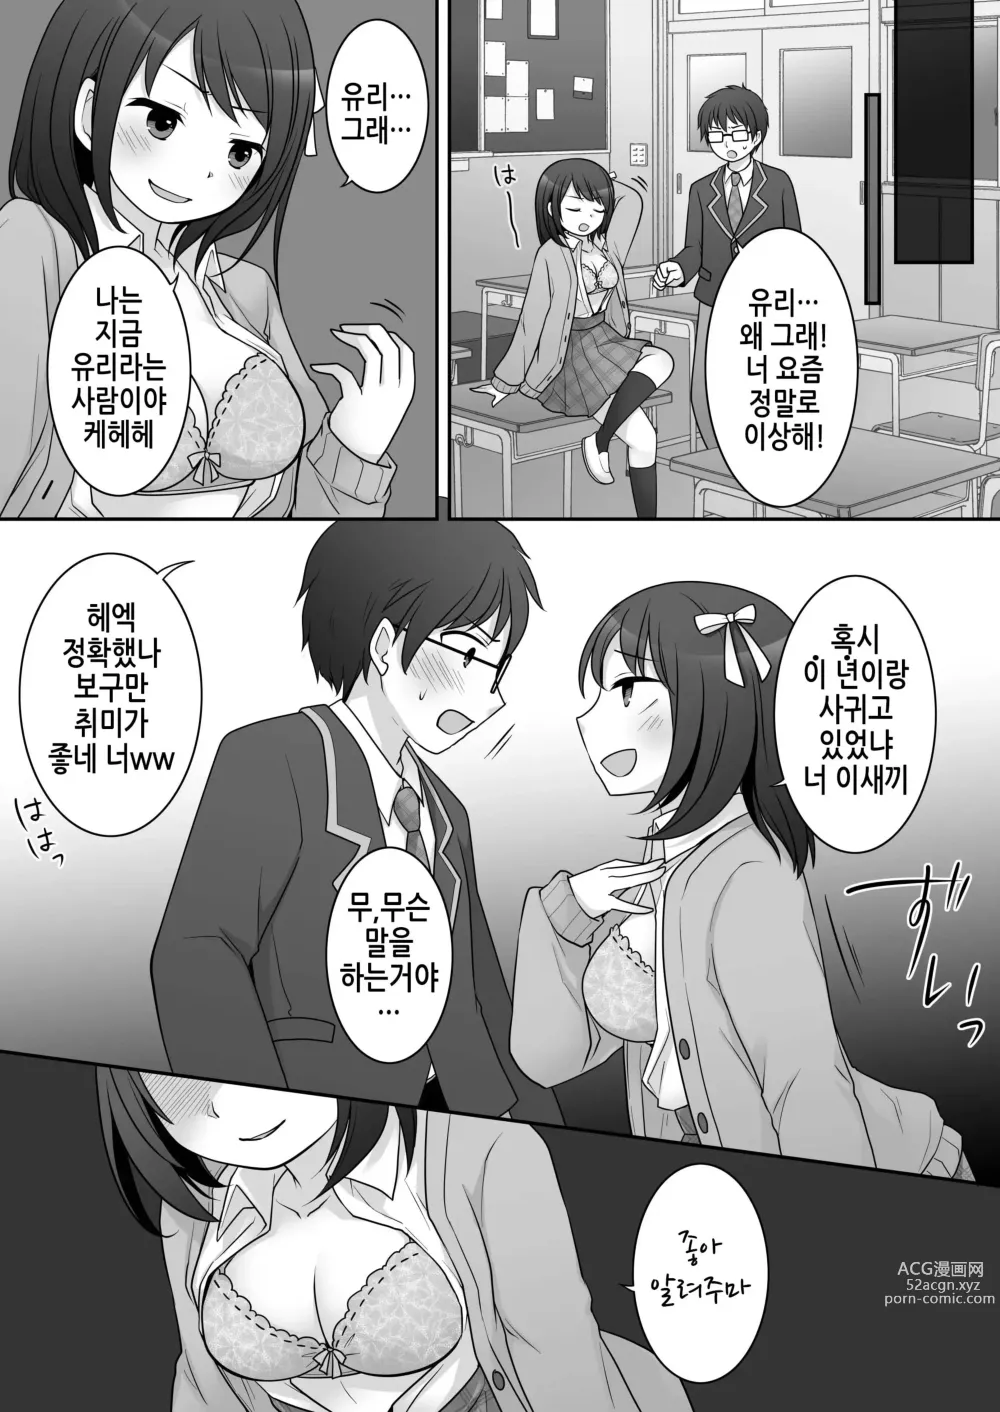 Page 14 of doujinshi 불량 in 그녀 내 여자친구의 몸뚱이는 불량남에게 납치되었다.